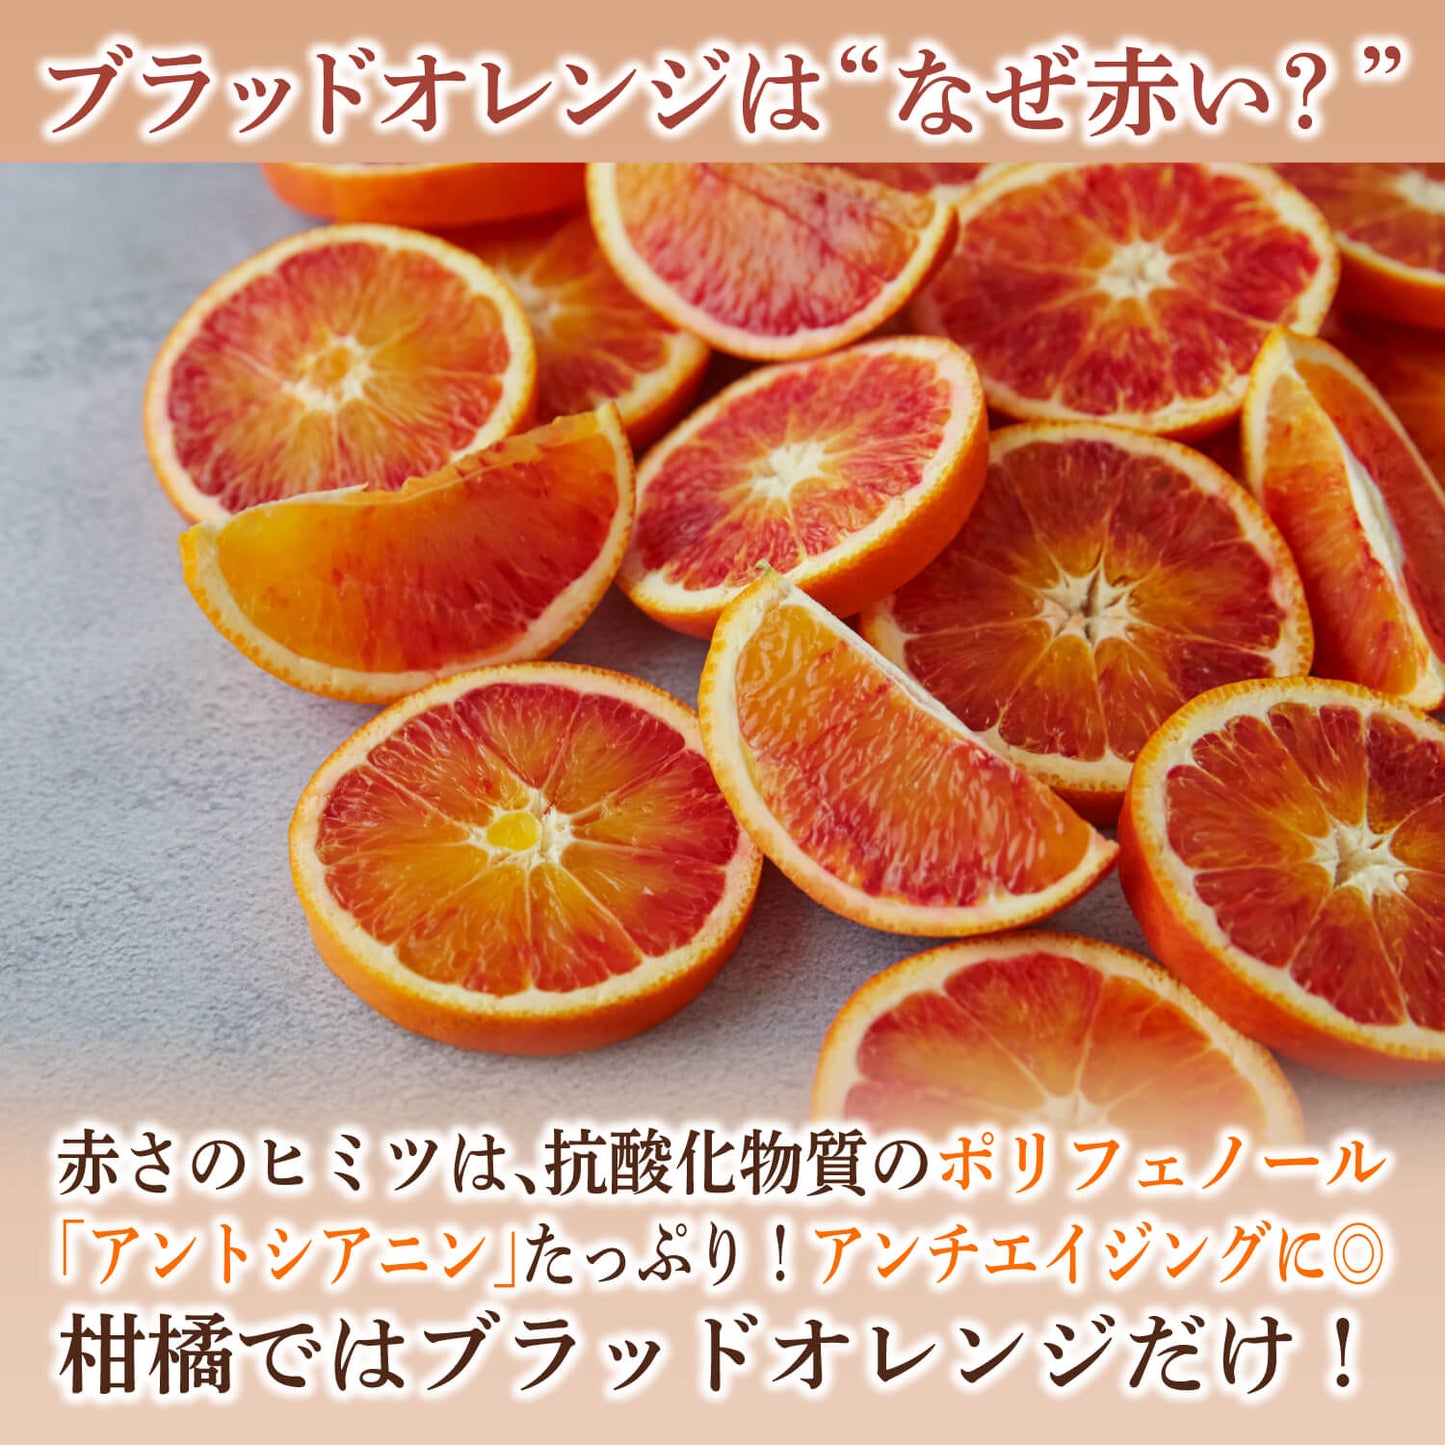 【ギフトセット】不知火・ブラッドオレンジフルーツチョコレート 4袋